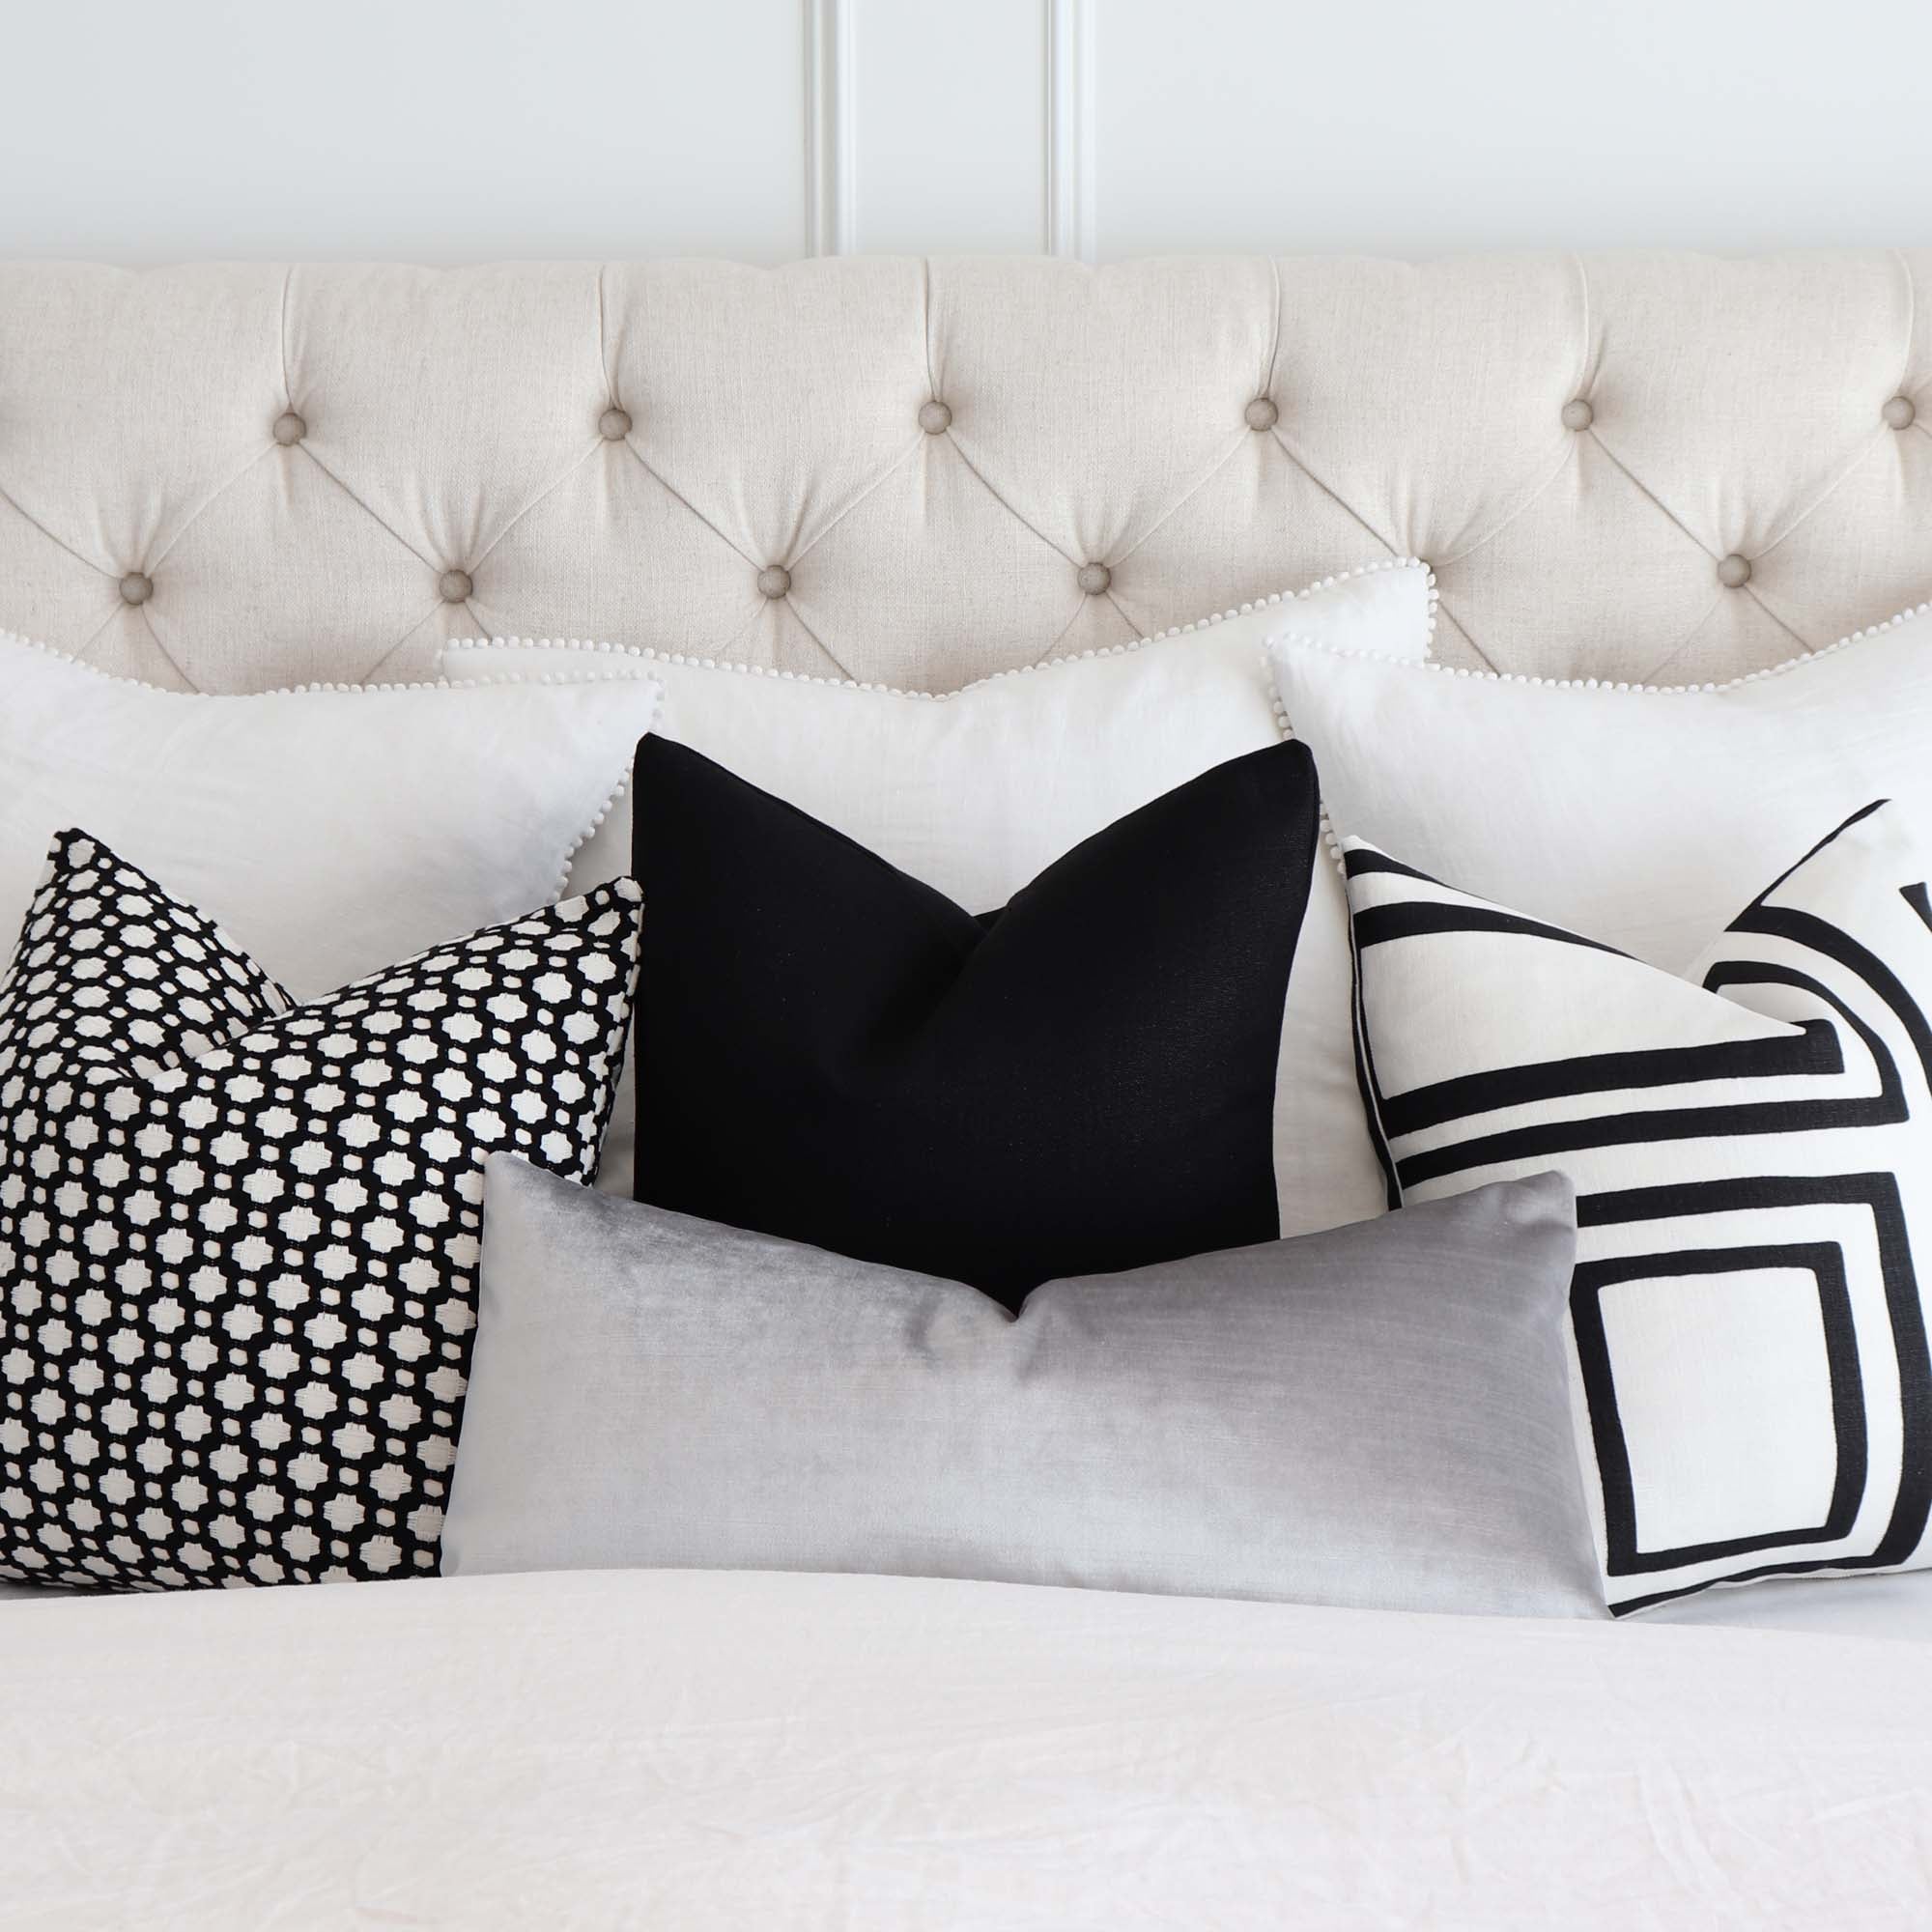 Decorative Pillows, Modern Throw Pillow, Grey Dalmatian Print